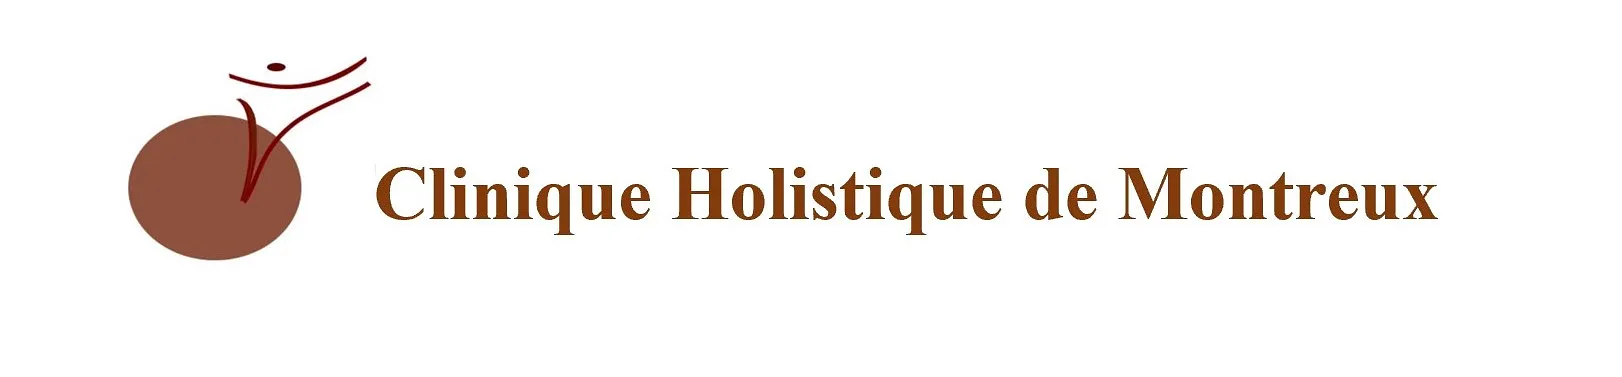 Clinique Holistique de Montreux